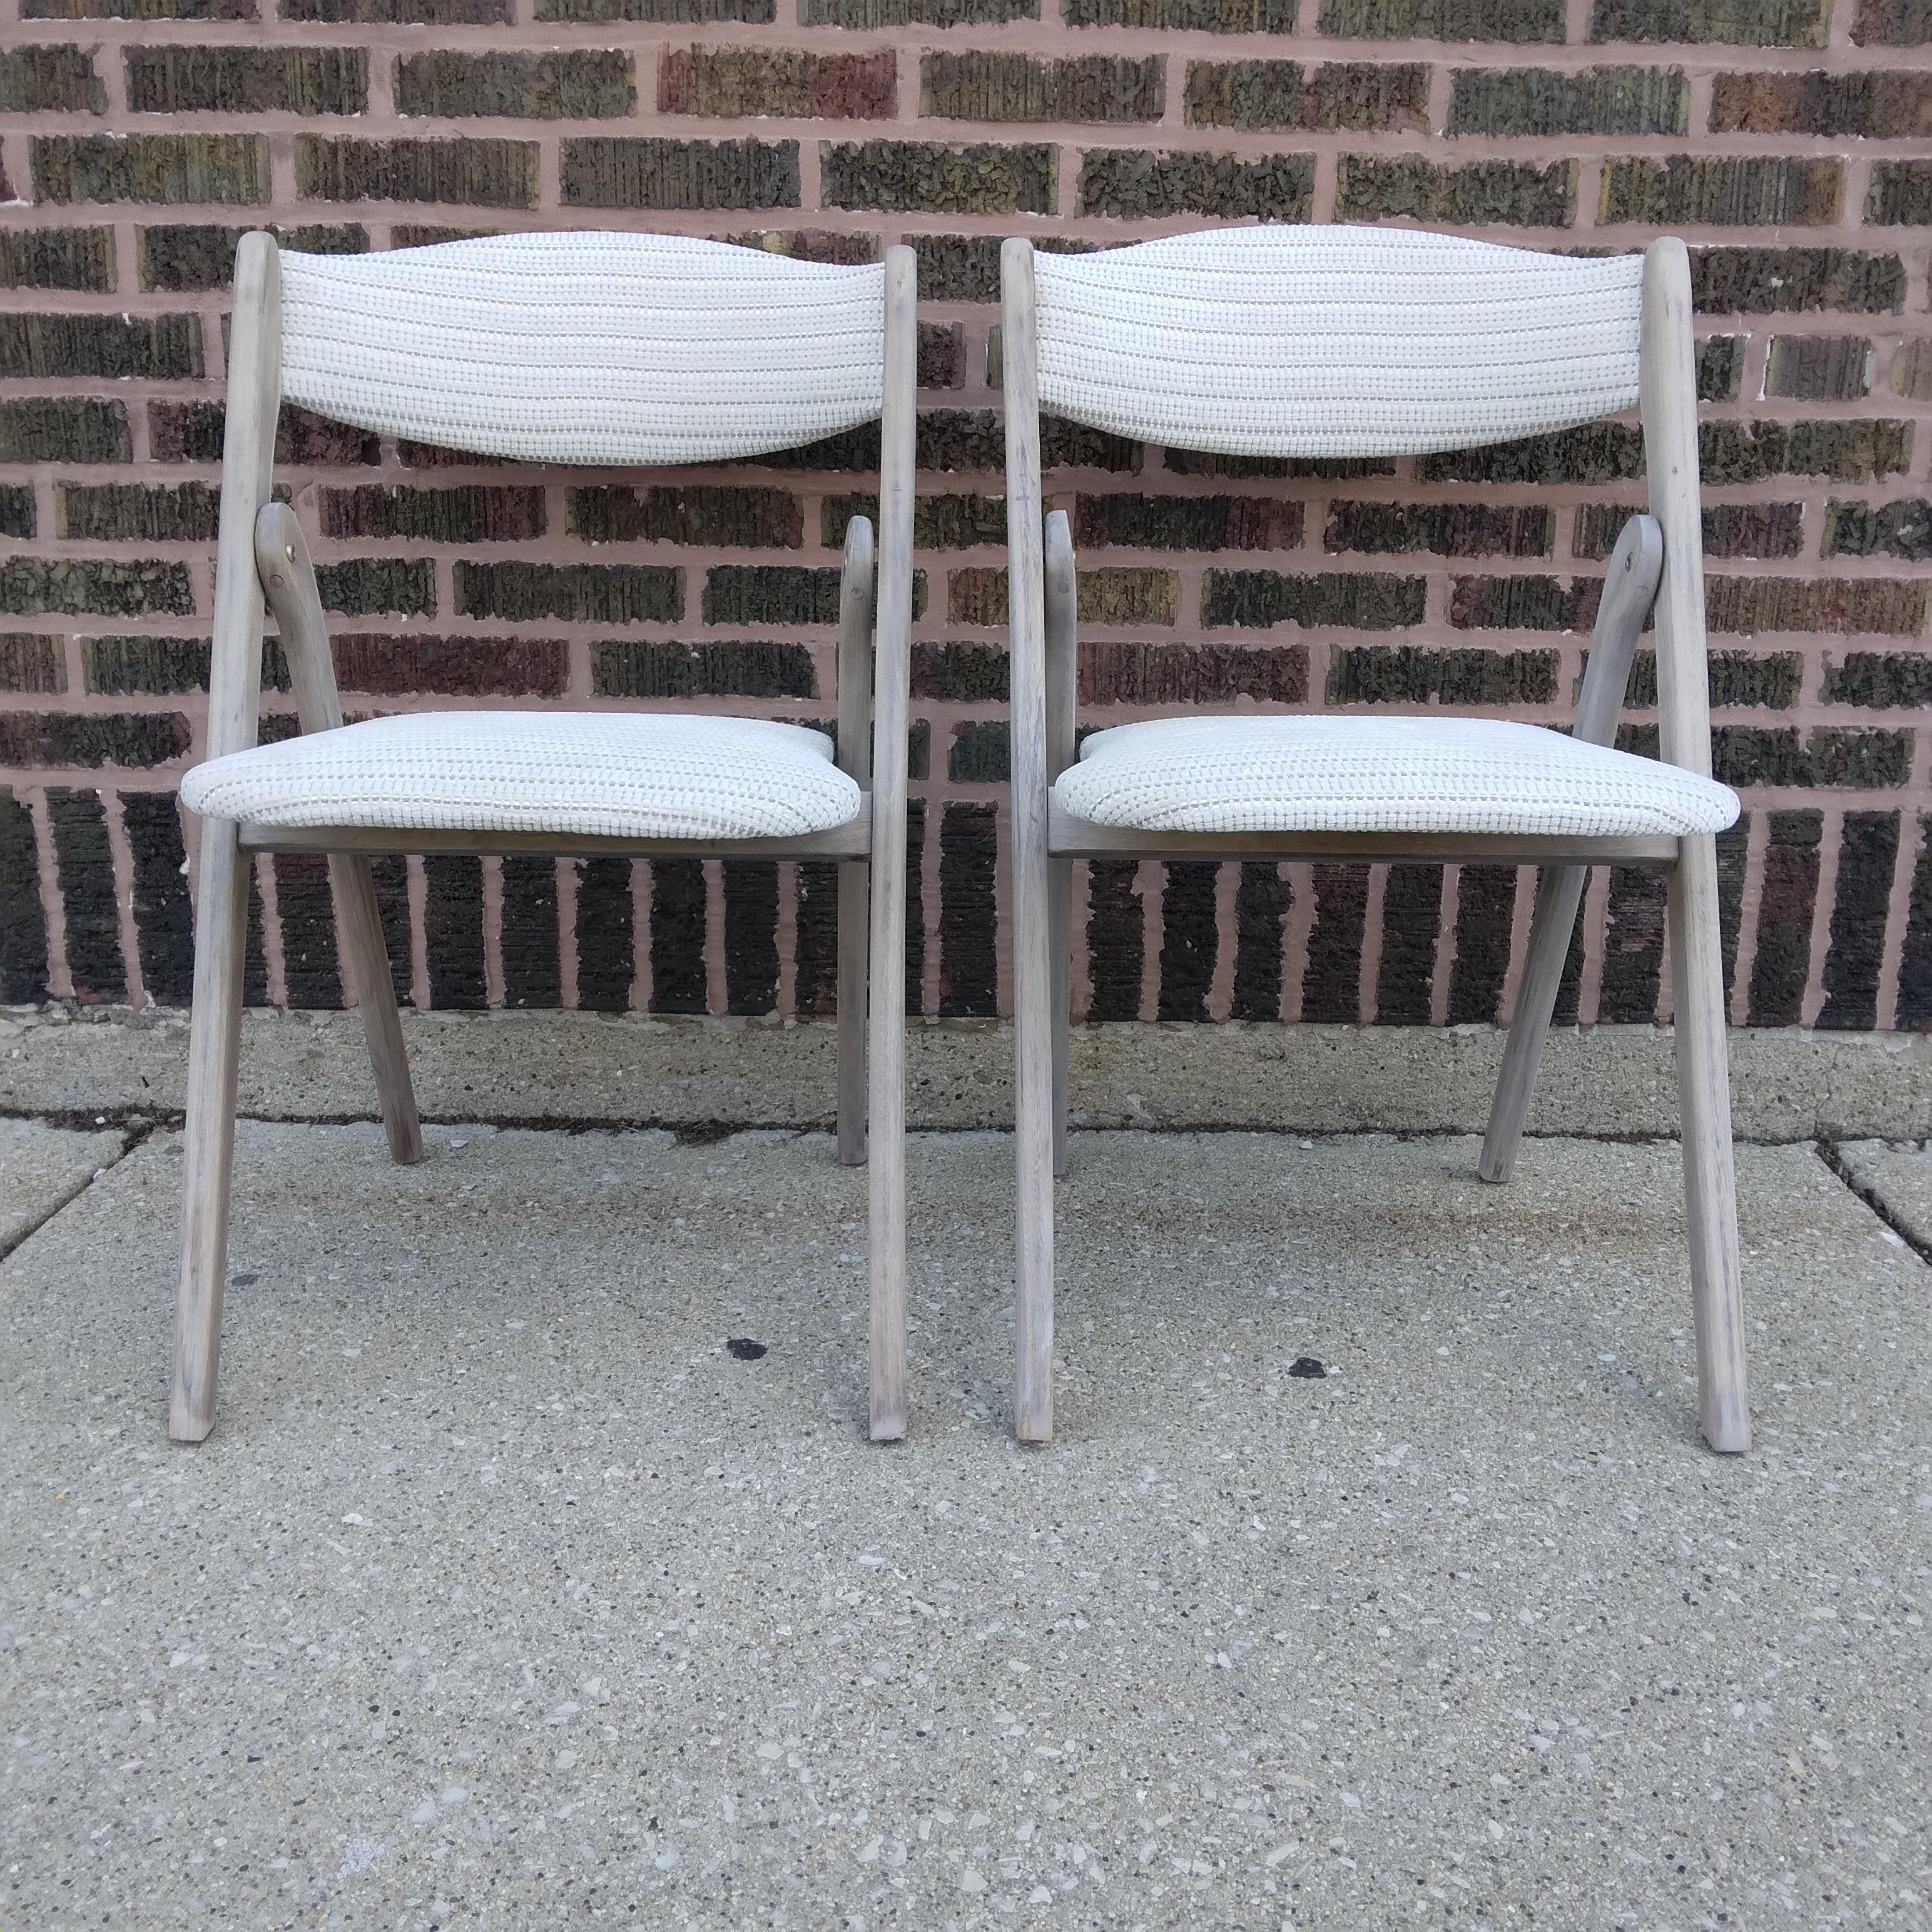 Éclairées par la lumière, ces chaises vintage fraîchement remises à neuf sont tout simplement époustouflantes. Connues à l'origine sous le nom de chaises Coronet Wonderfold, ces chaises ont bientôt soixante ans et sont toujours aussi robustes. Nous